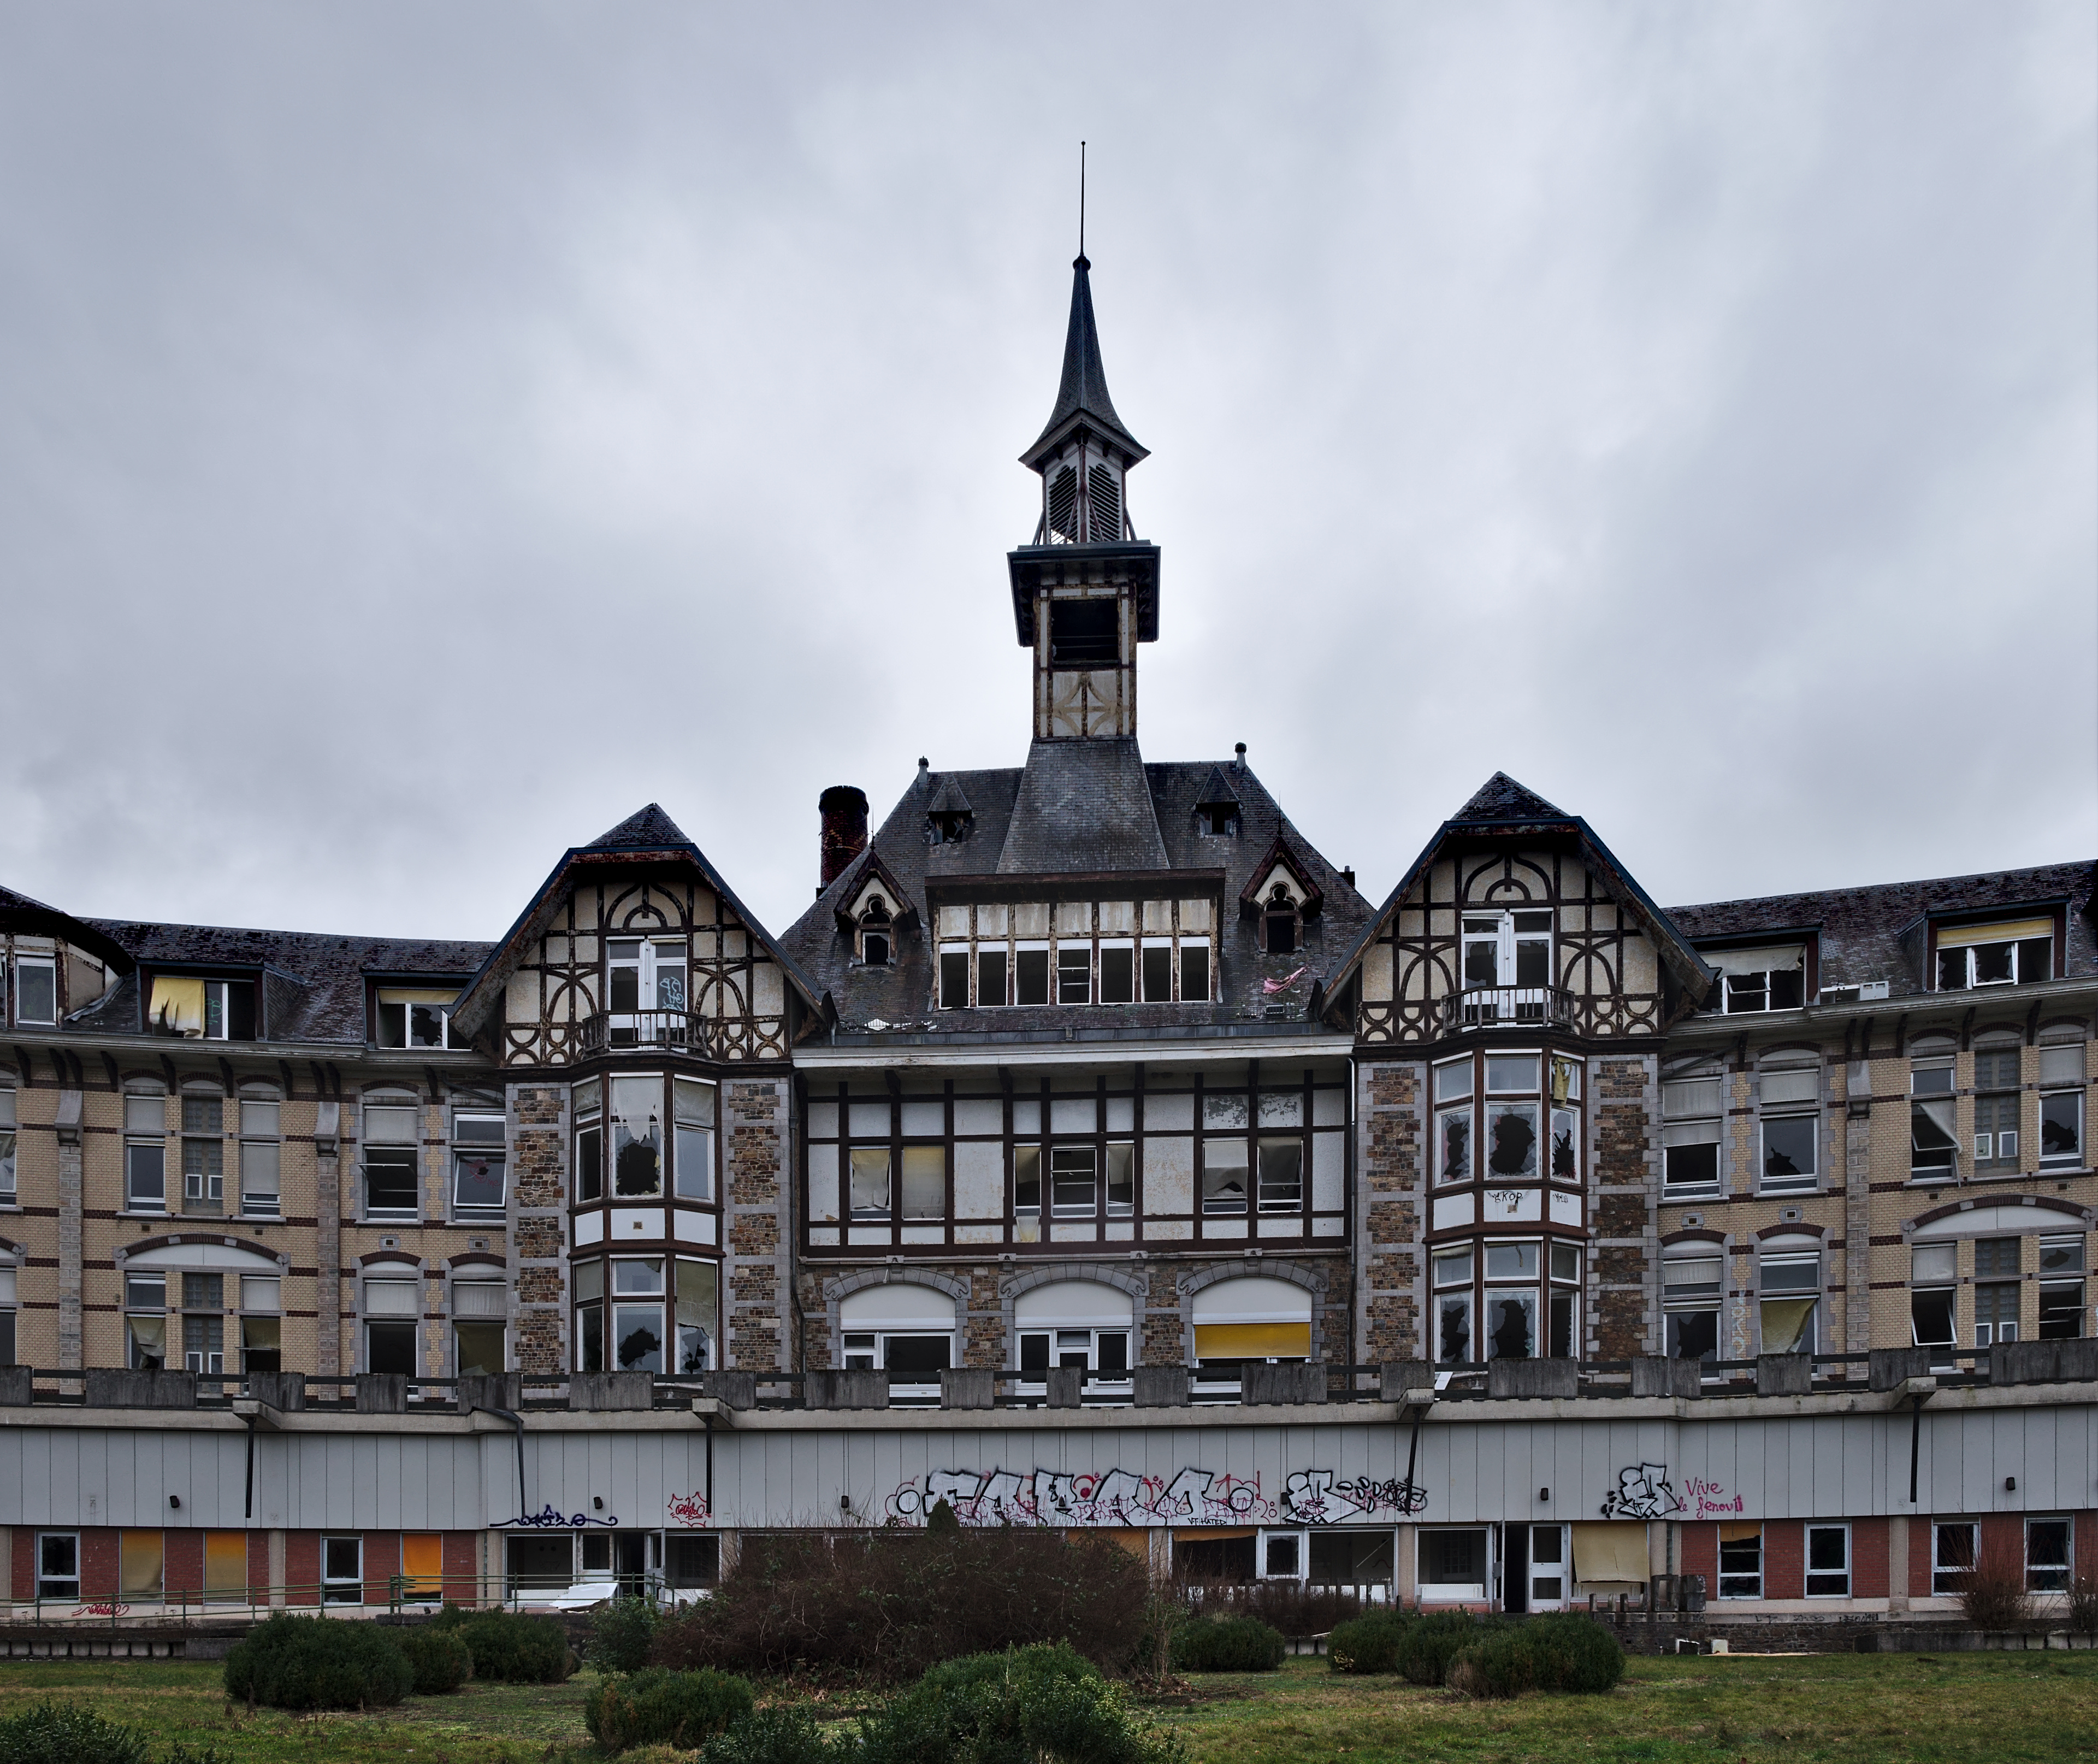 Center partial view of the front of Sanatorium du Basil, Stoumont, Belgium (DSCF3500)